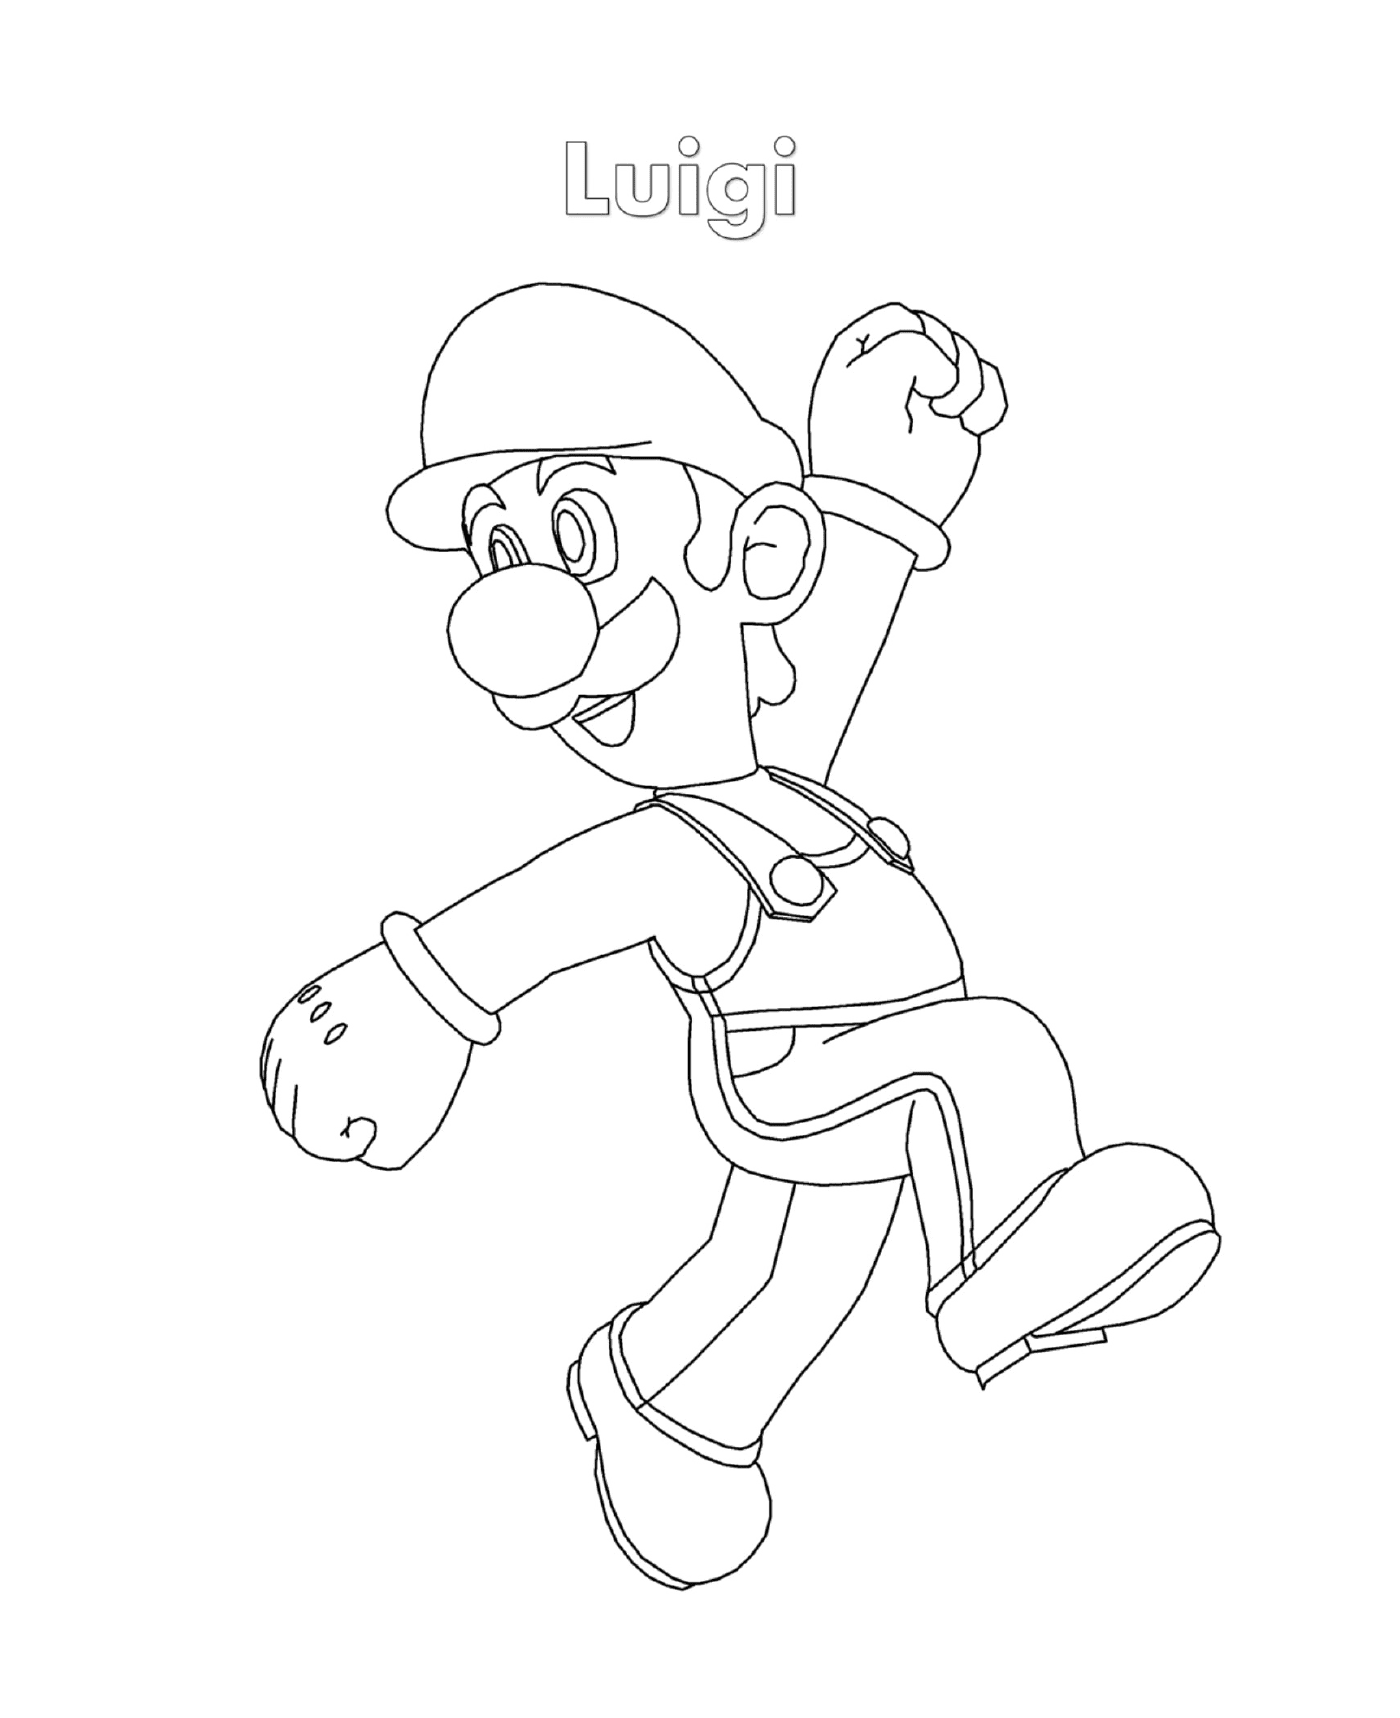  Luigi de Super Mario, un hombre corriendo 